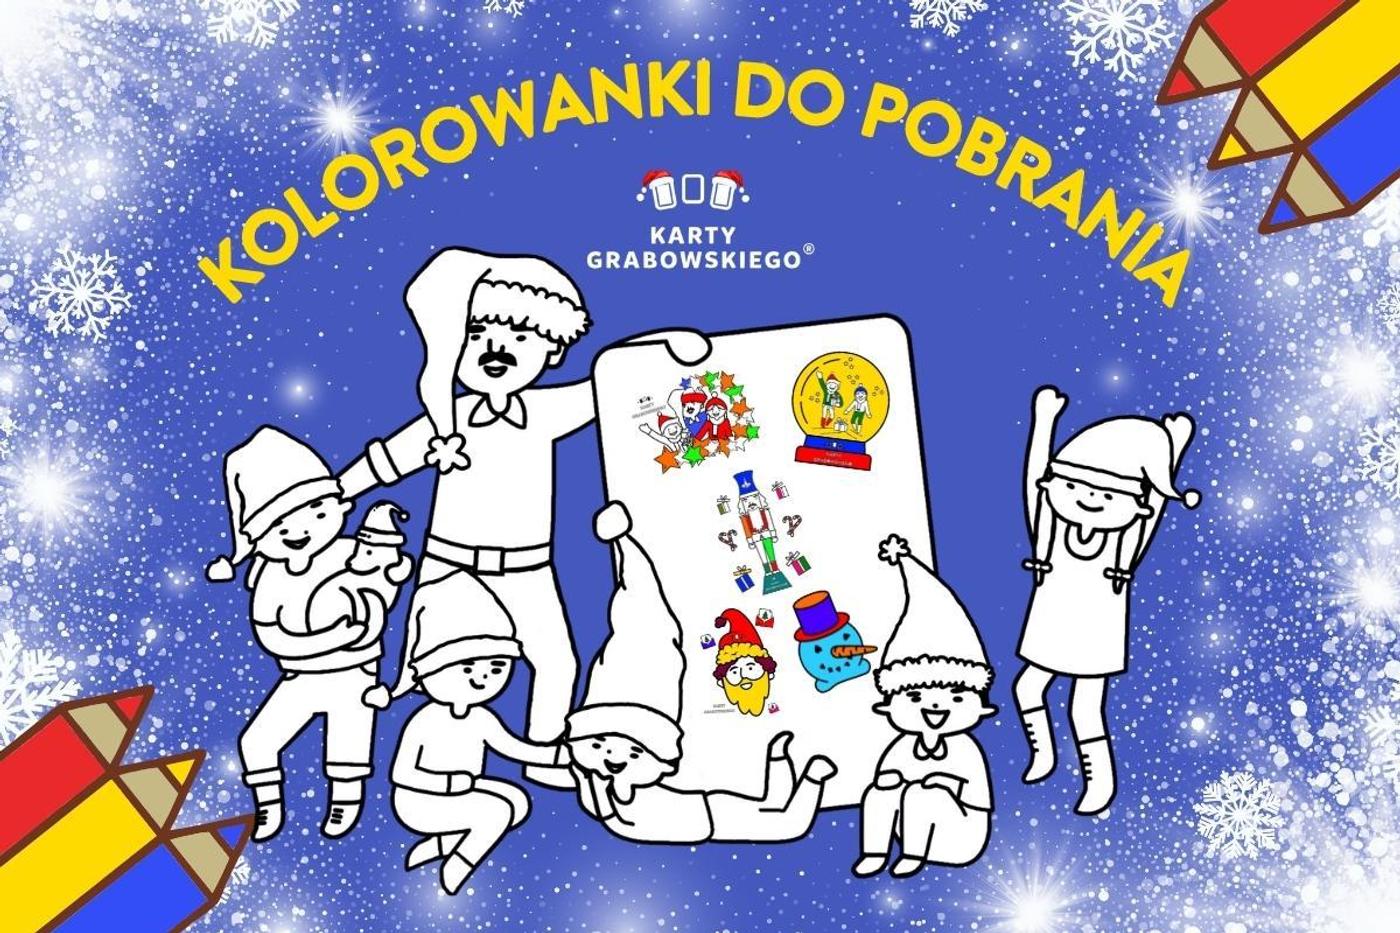 Cover Image for Świąteczne kolorowanki z Kartami Grabowskiego do pobrania